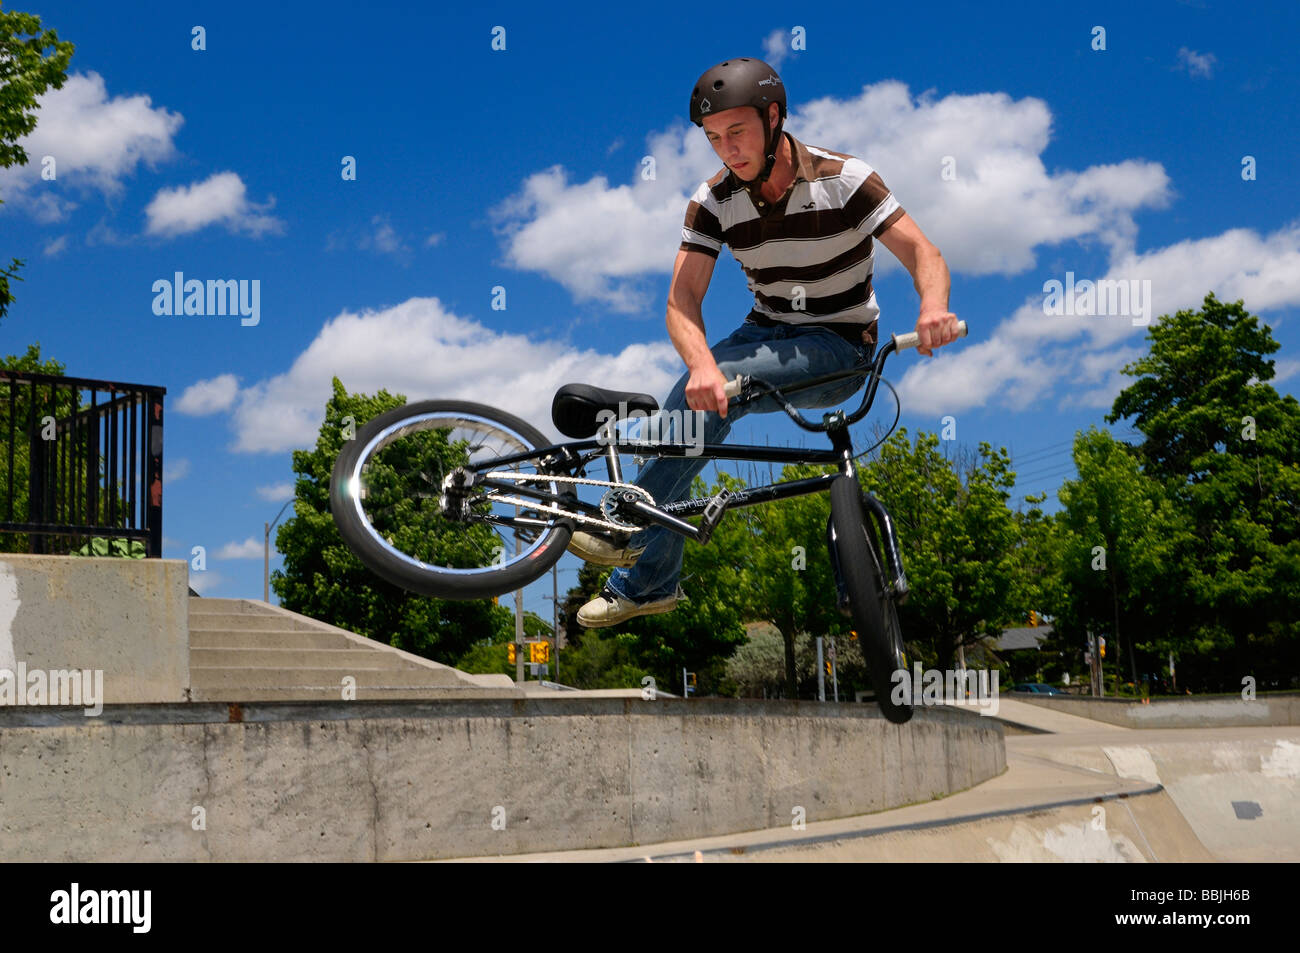 Biker bmx volant au-dessus d'un bol, faire un 360 tailwhip at an outdoor skate park à toronto Banque D'Images